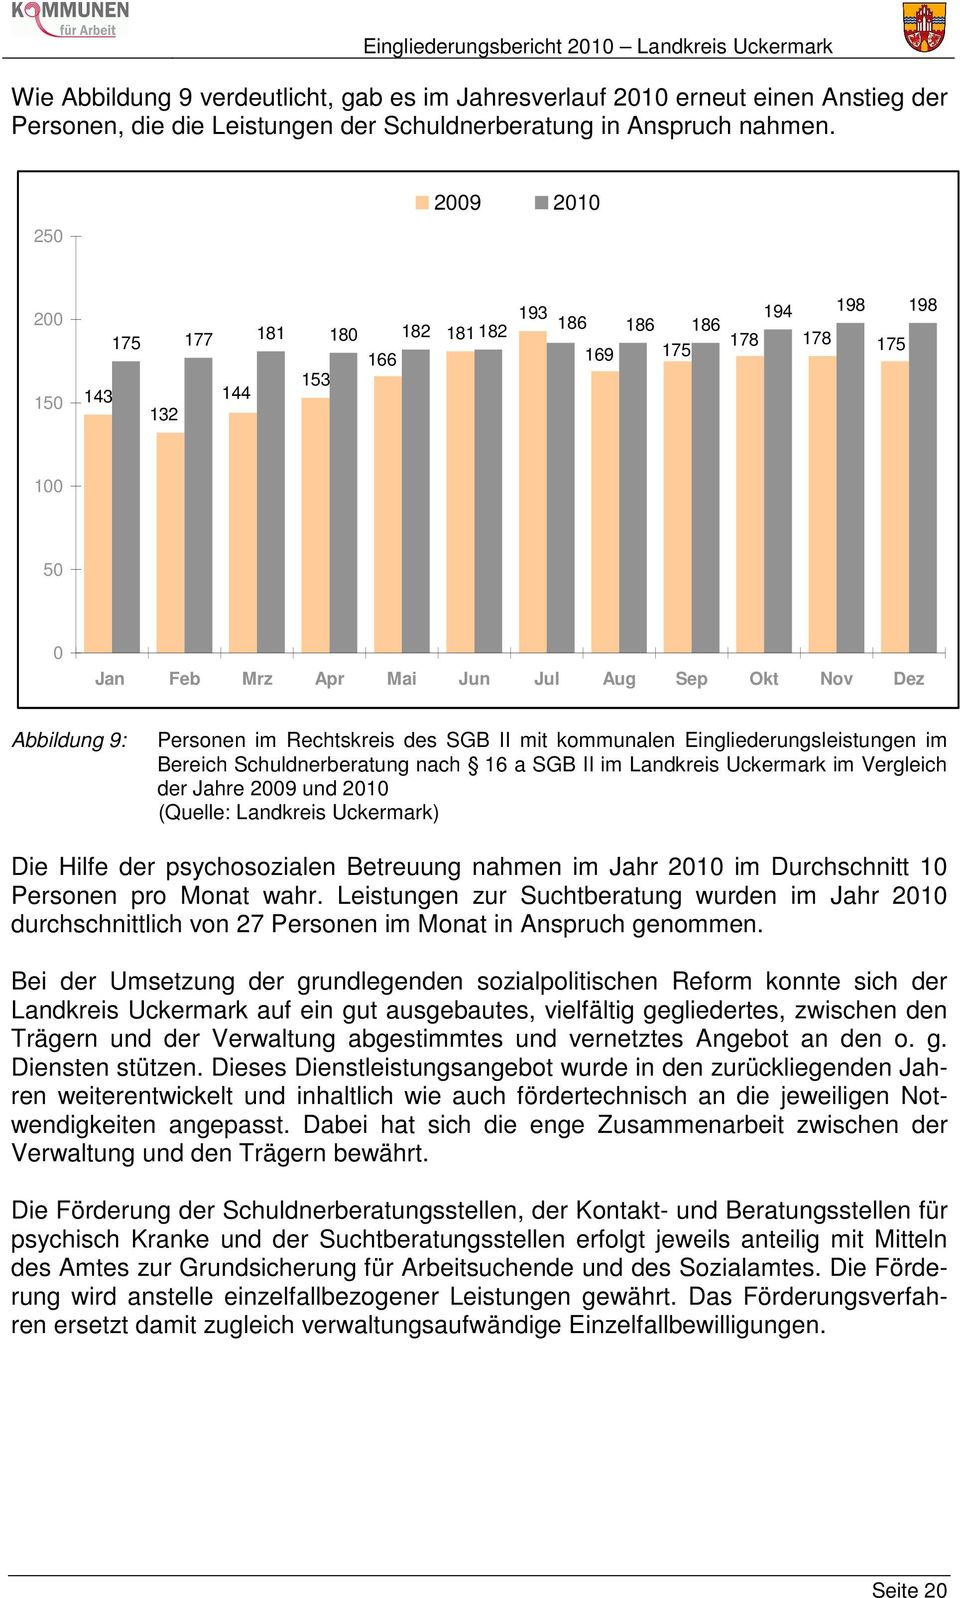 Rechtskreis des SGB II mit kommunalen Eingliederungsleistungen im Bereich Schuldnerberatung nach 16 a SGB II im Landkreis Uckermark im Vergleich der Jahre 2009 und 2010 (Quelle: Landkreis Uckermark)